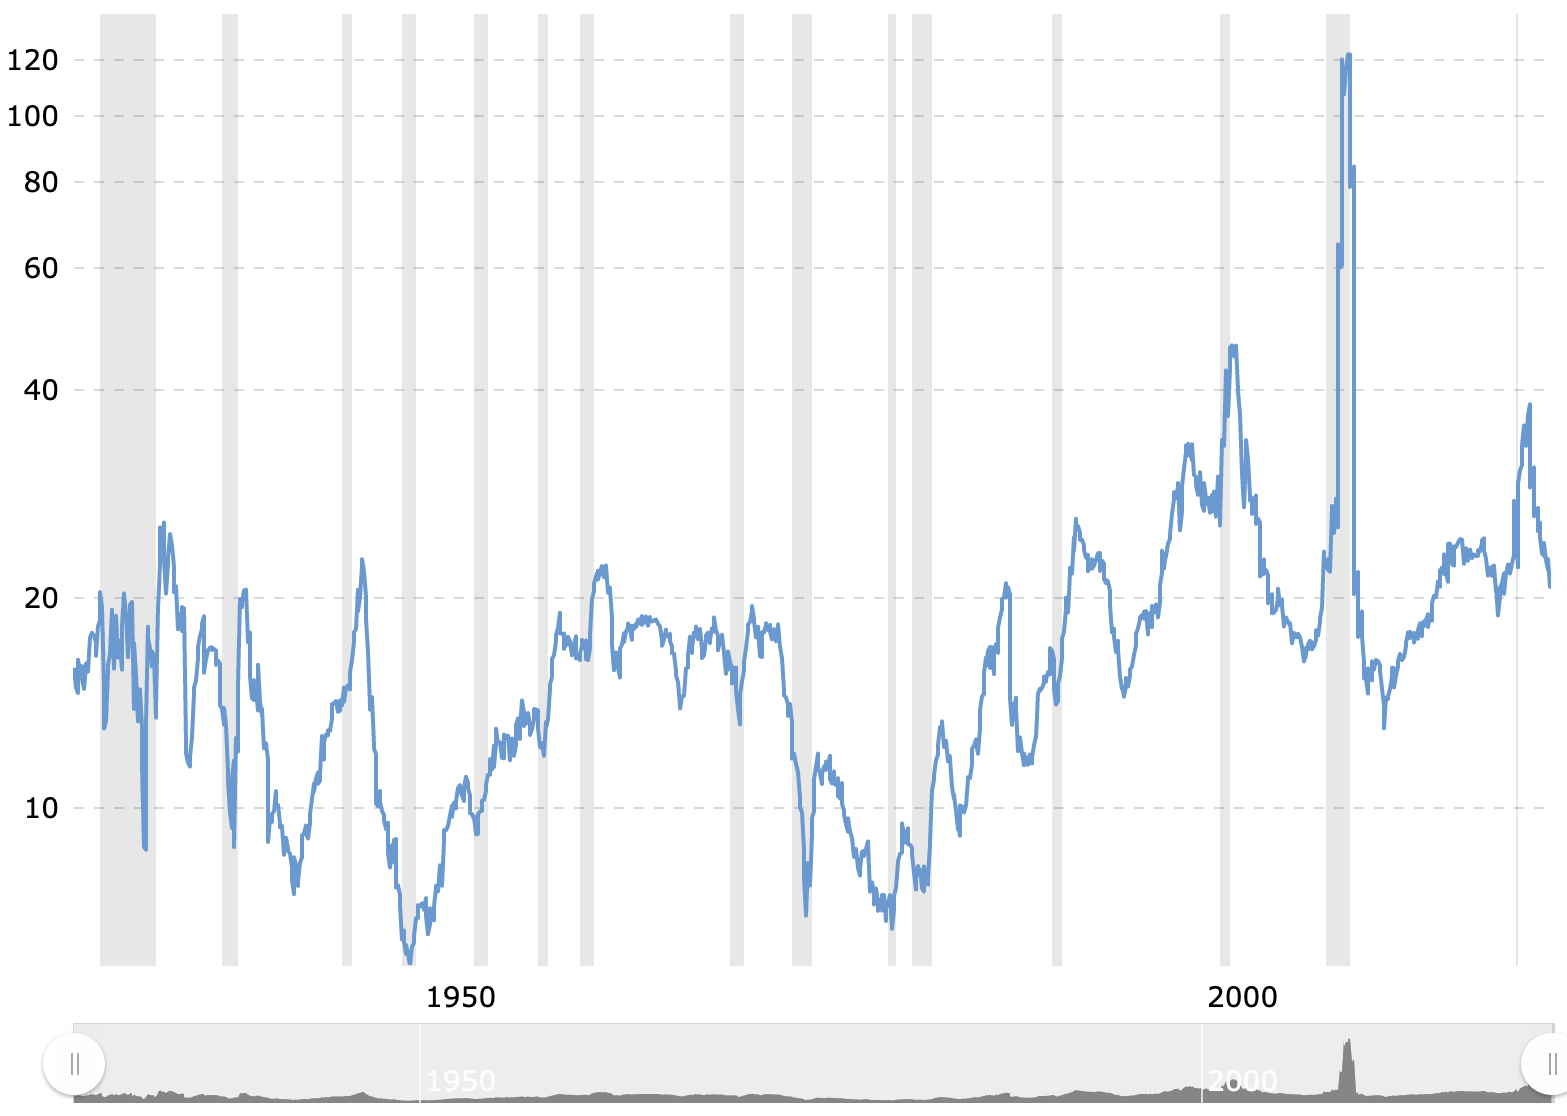 S&P 500's P/E Ratio Since 1926